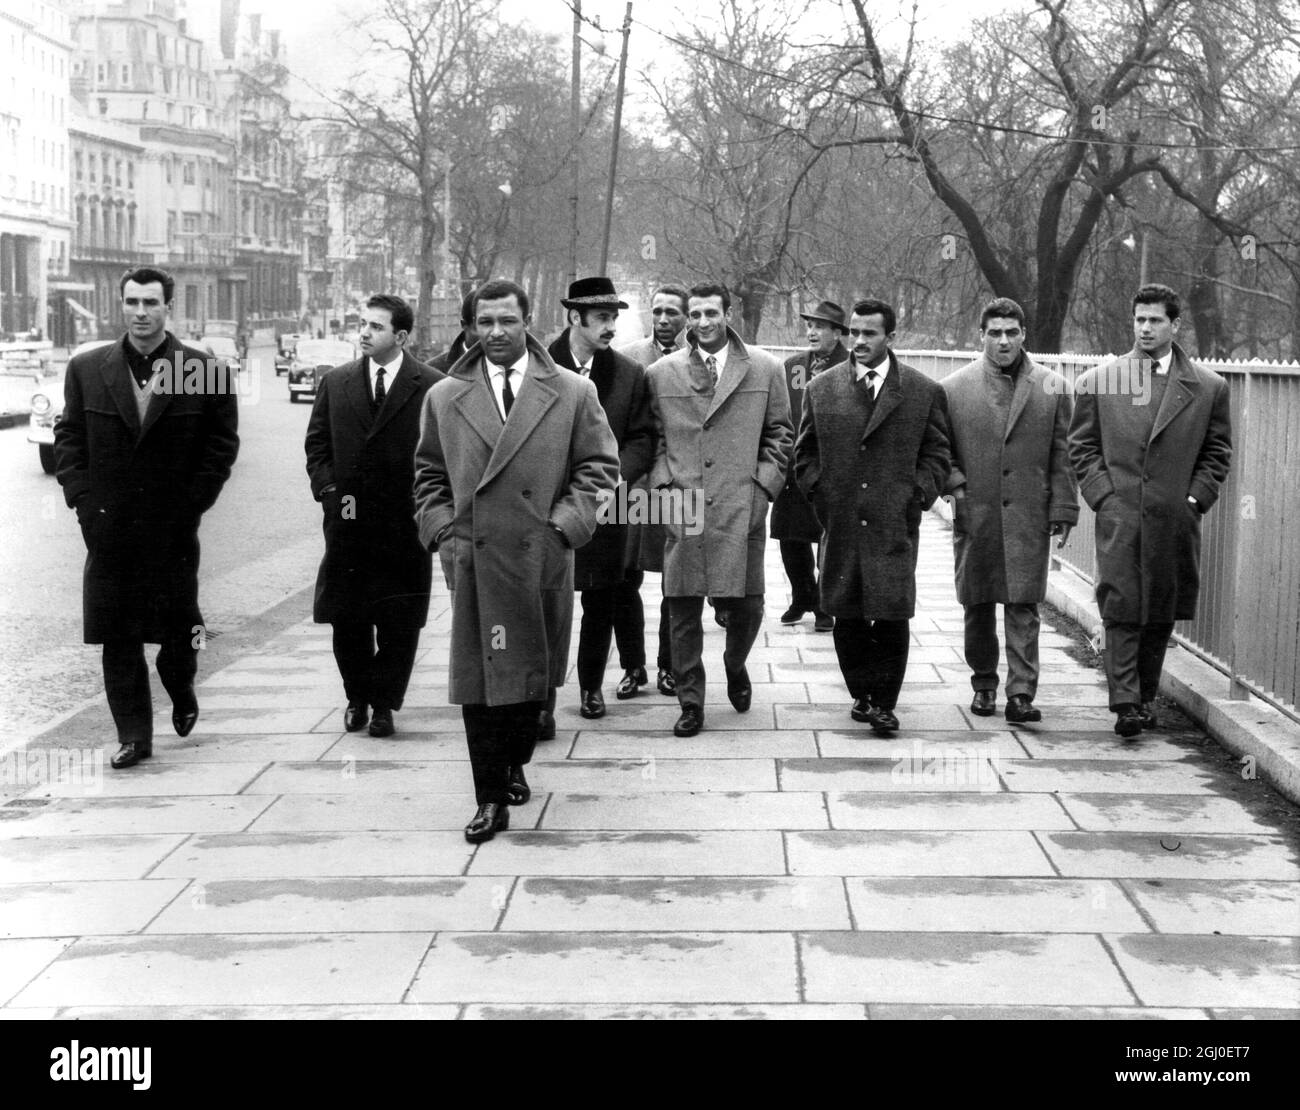 Mitglieder der Benfica-Mannschaft, die portugiesischen Fußballmeister, machen einen Spaziergang entlang des Piccadilly Whille auf einer Besichtigungstour durch London. Das Benfica-Team ist gekommen, um in der zweiten Etappe des Halbfinales der Europameisterschaft Spurs zu spielen. April 1962. Stockfoto